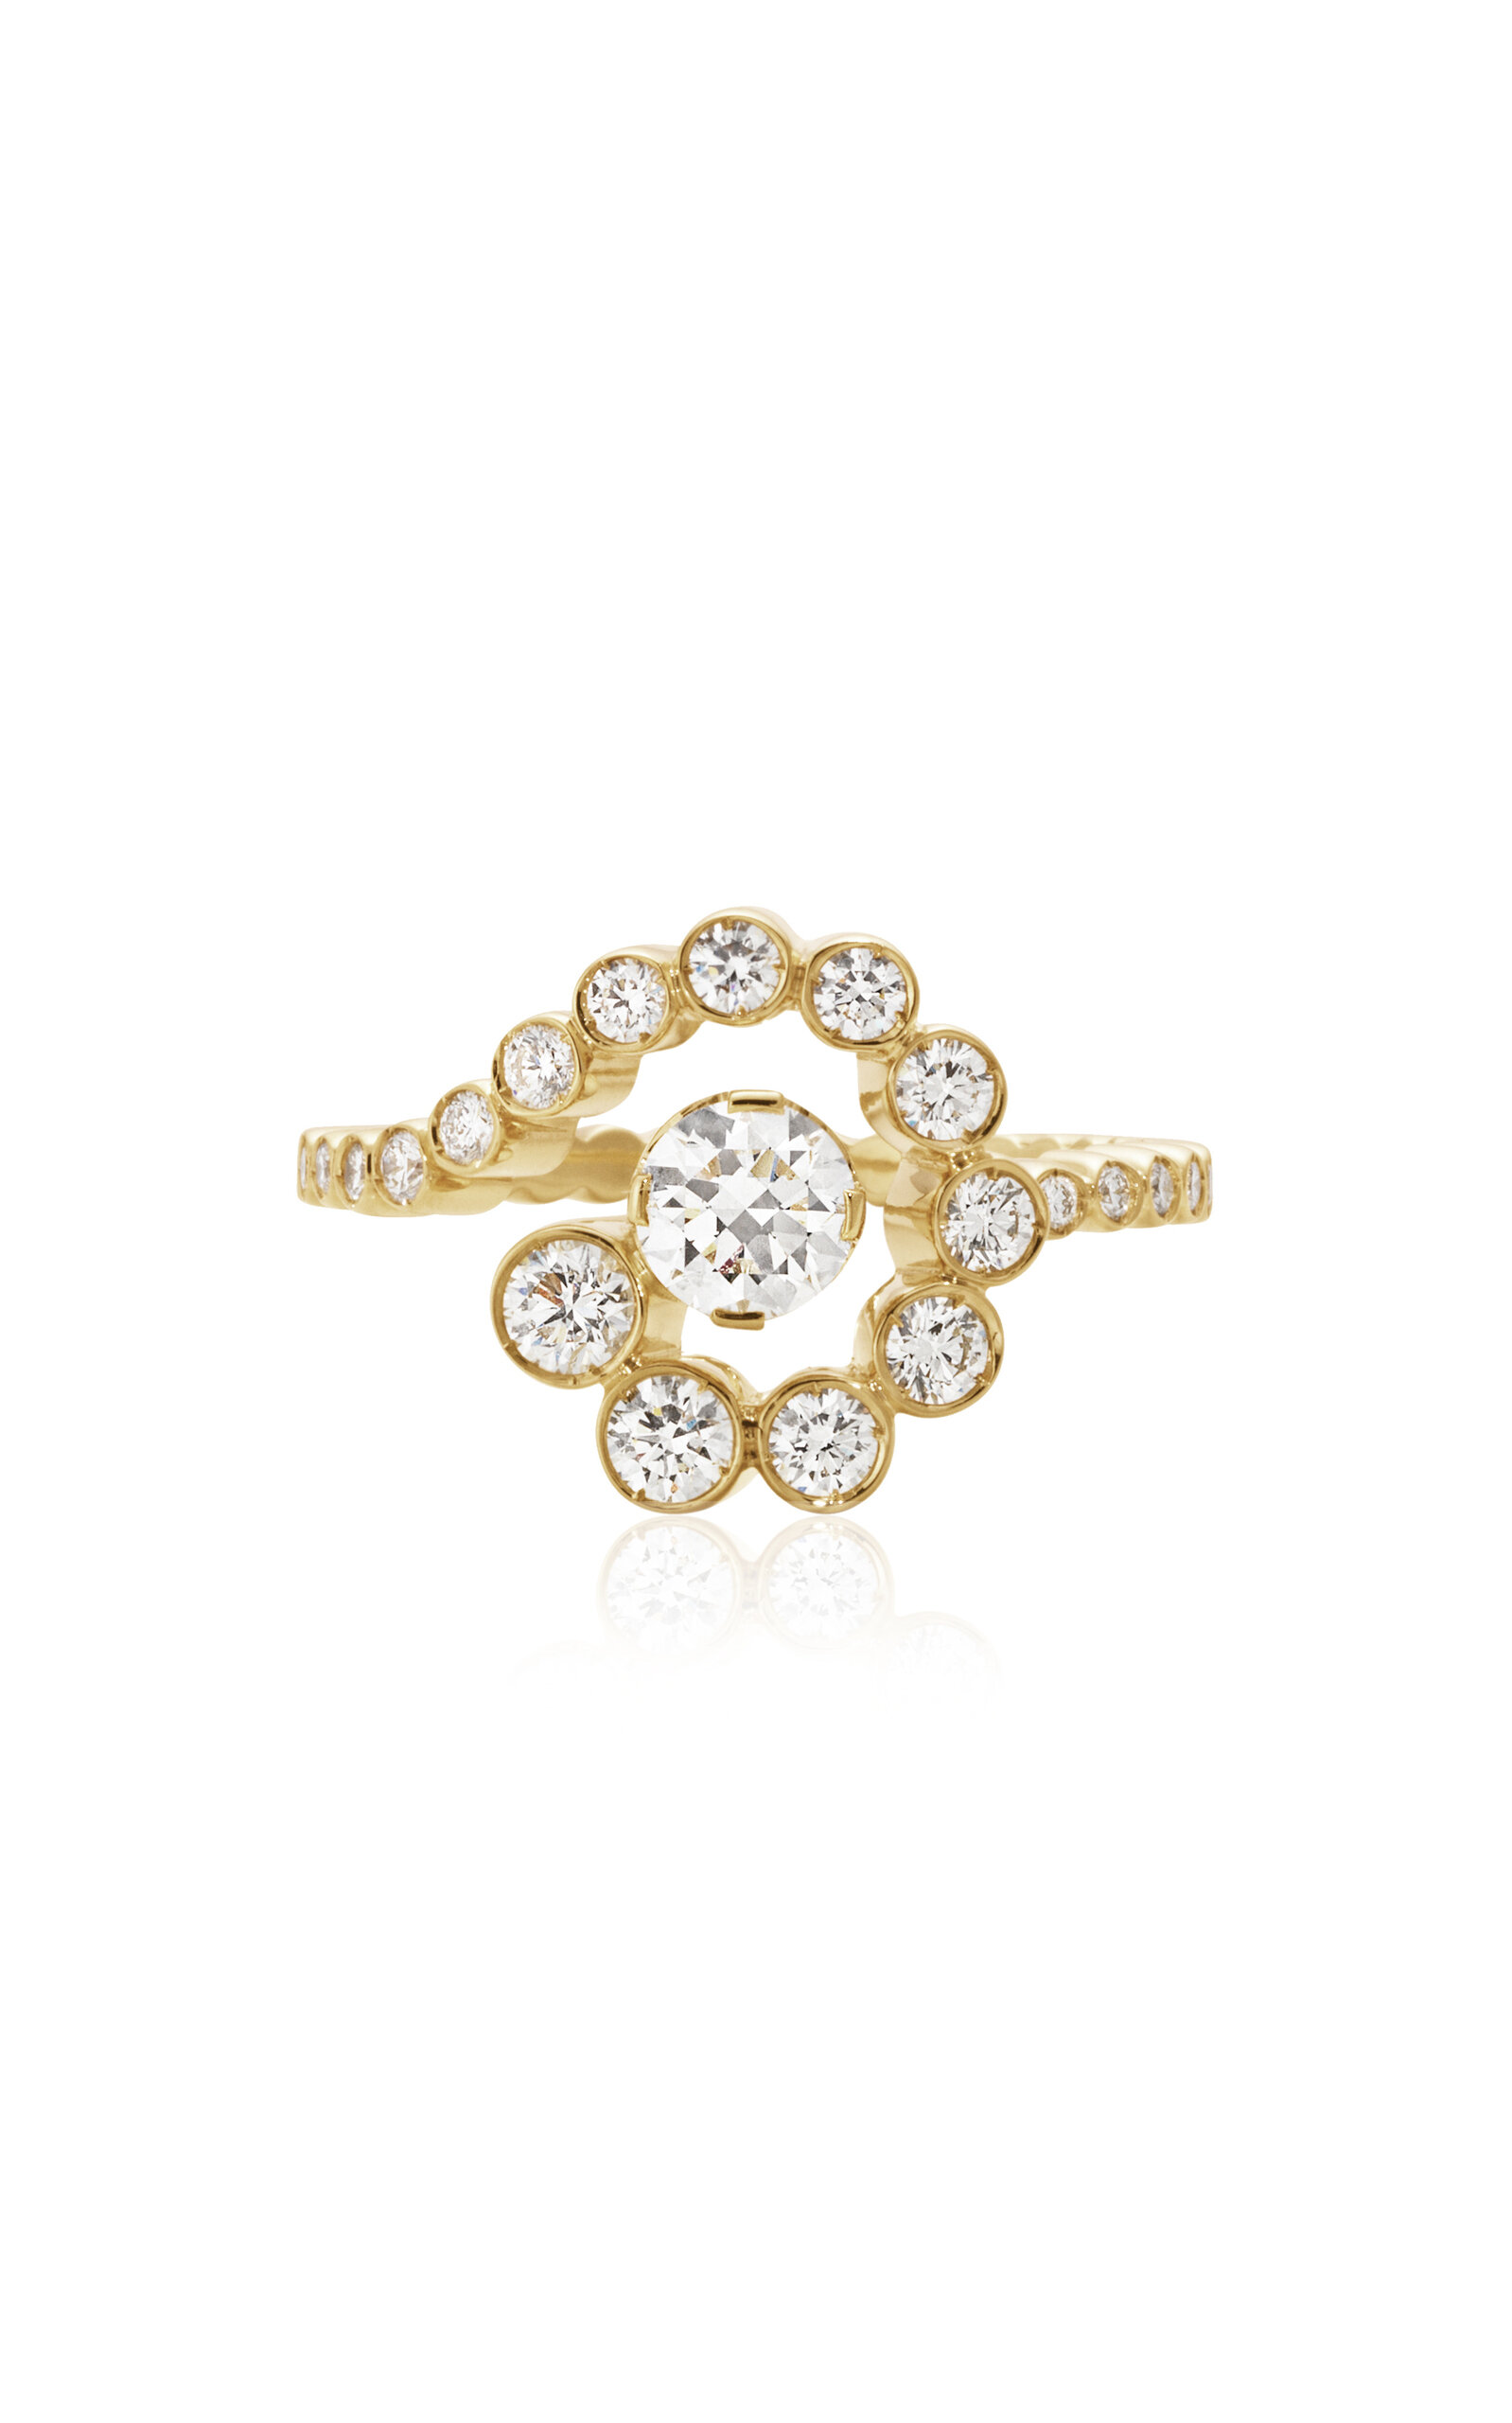 Escargot de Diamant 18K Yellow Gold Diamond Ring